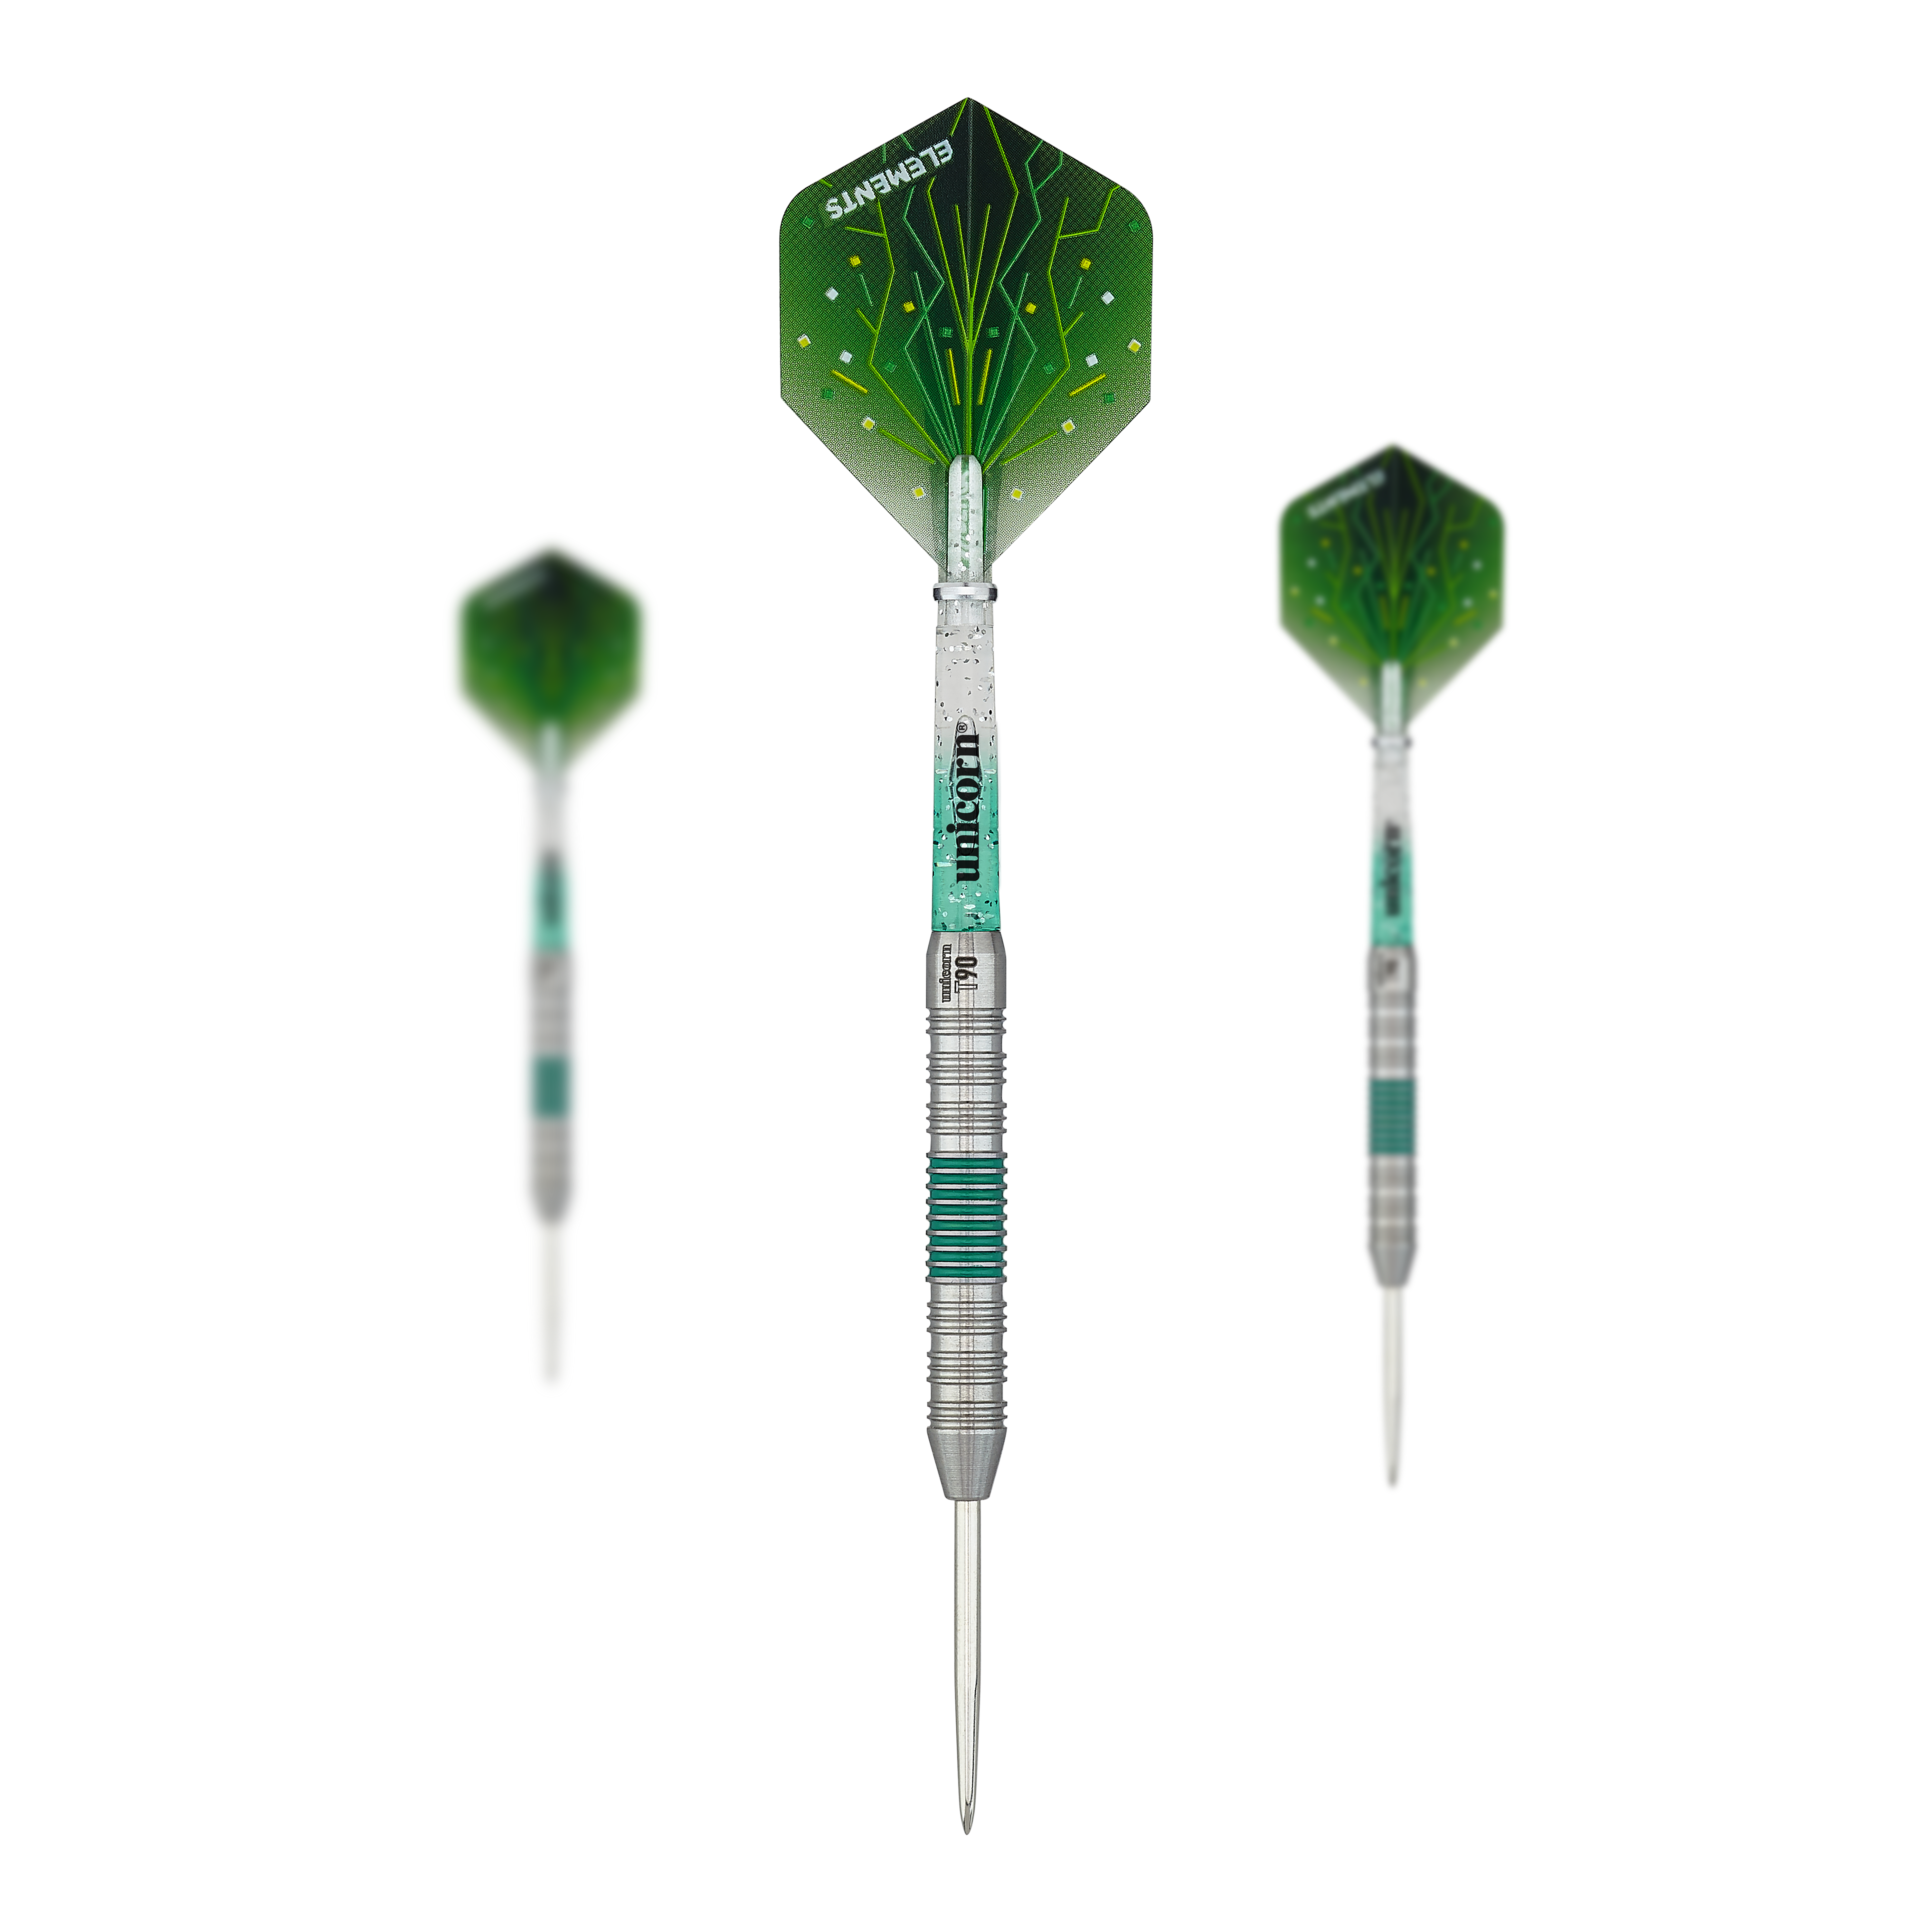 Unicorn T90 Core XL Green steel darts